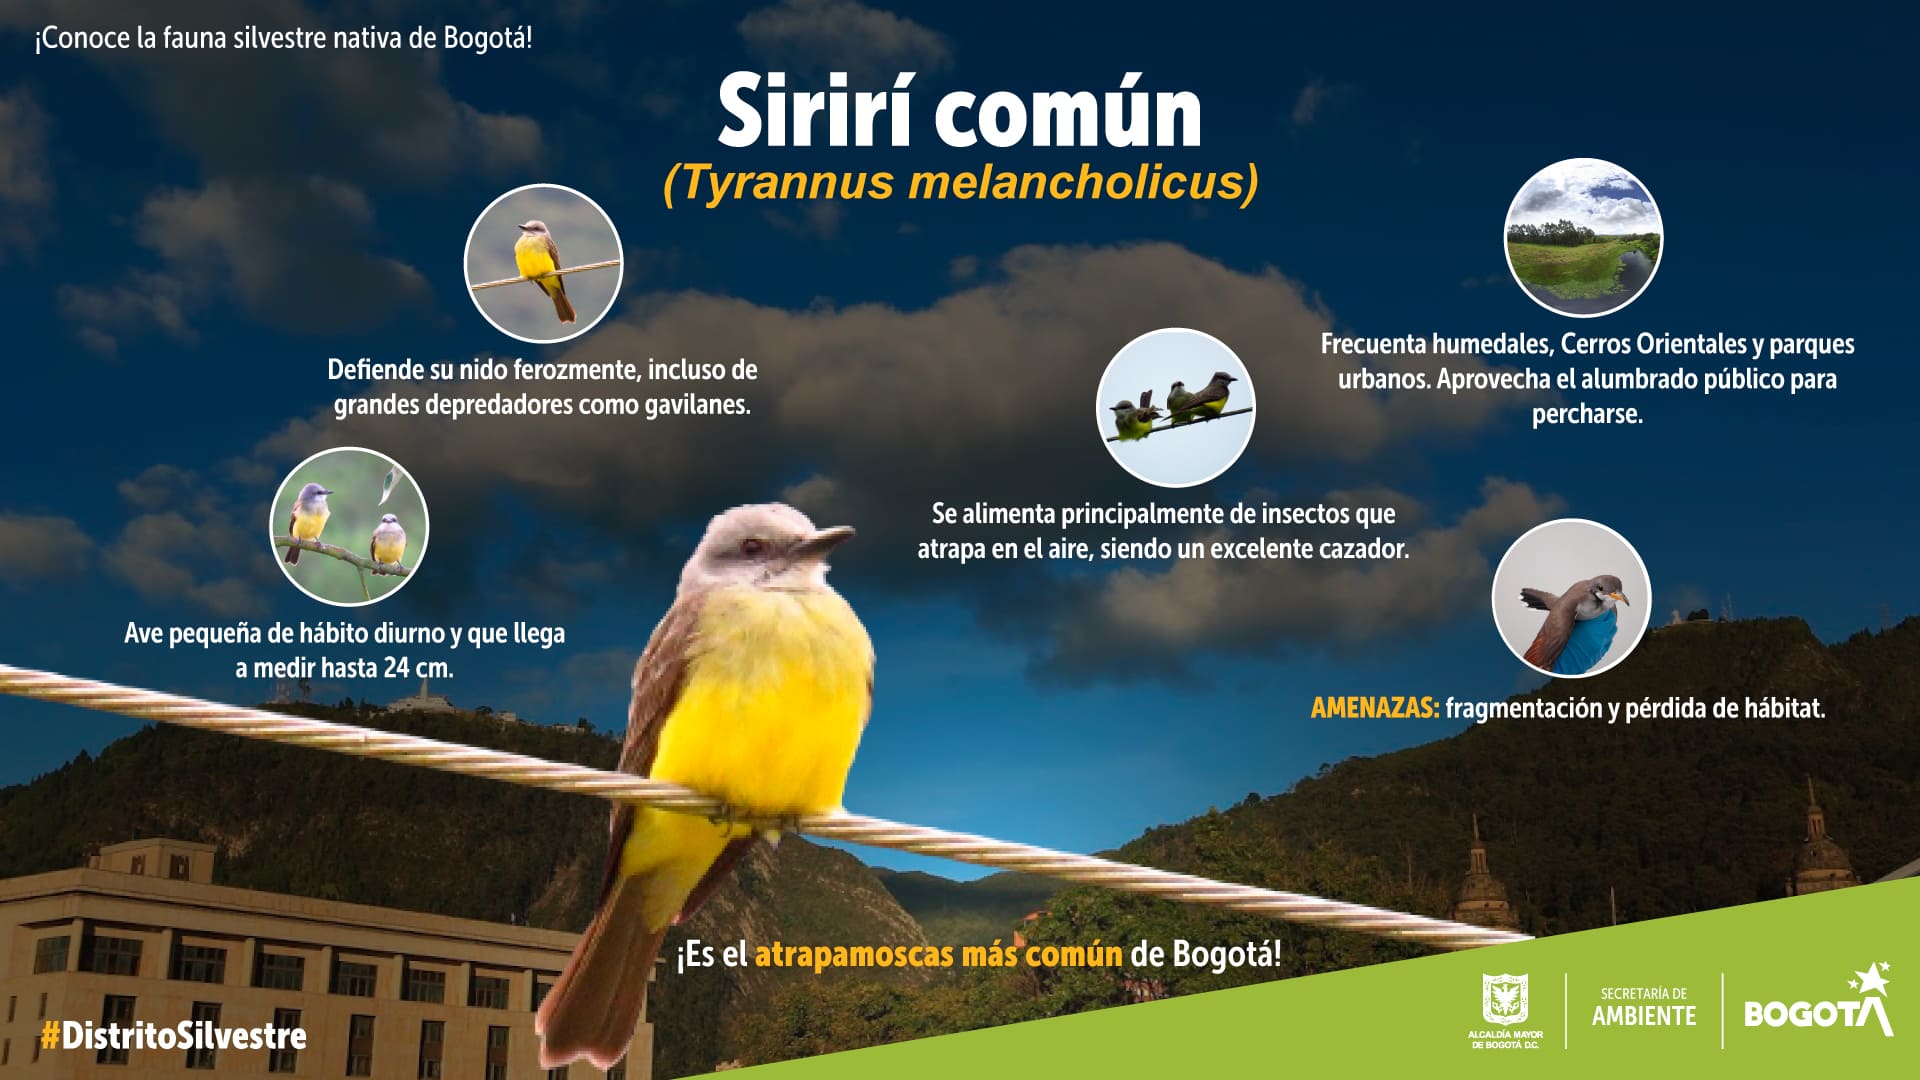 Sirirí común, el famoso atrapamoscas de los ecosistemas de Bogotá